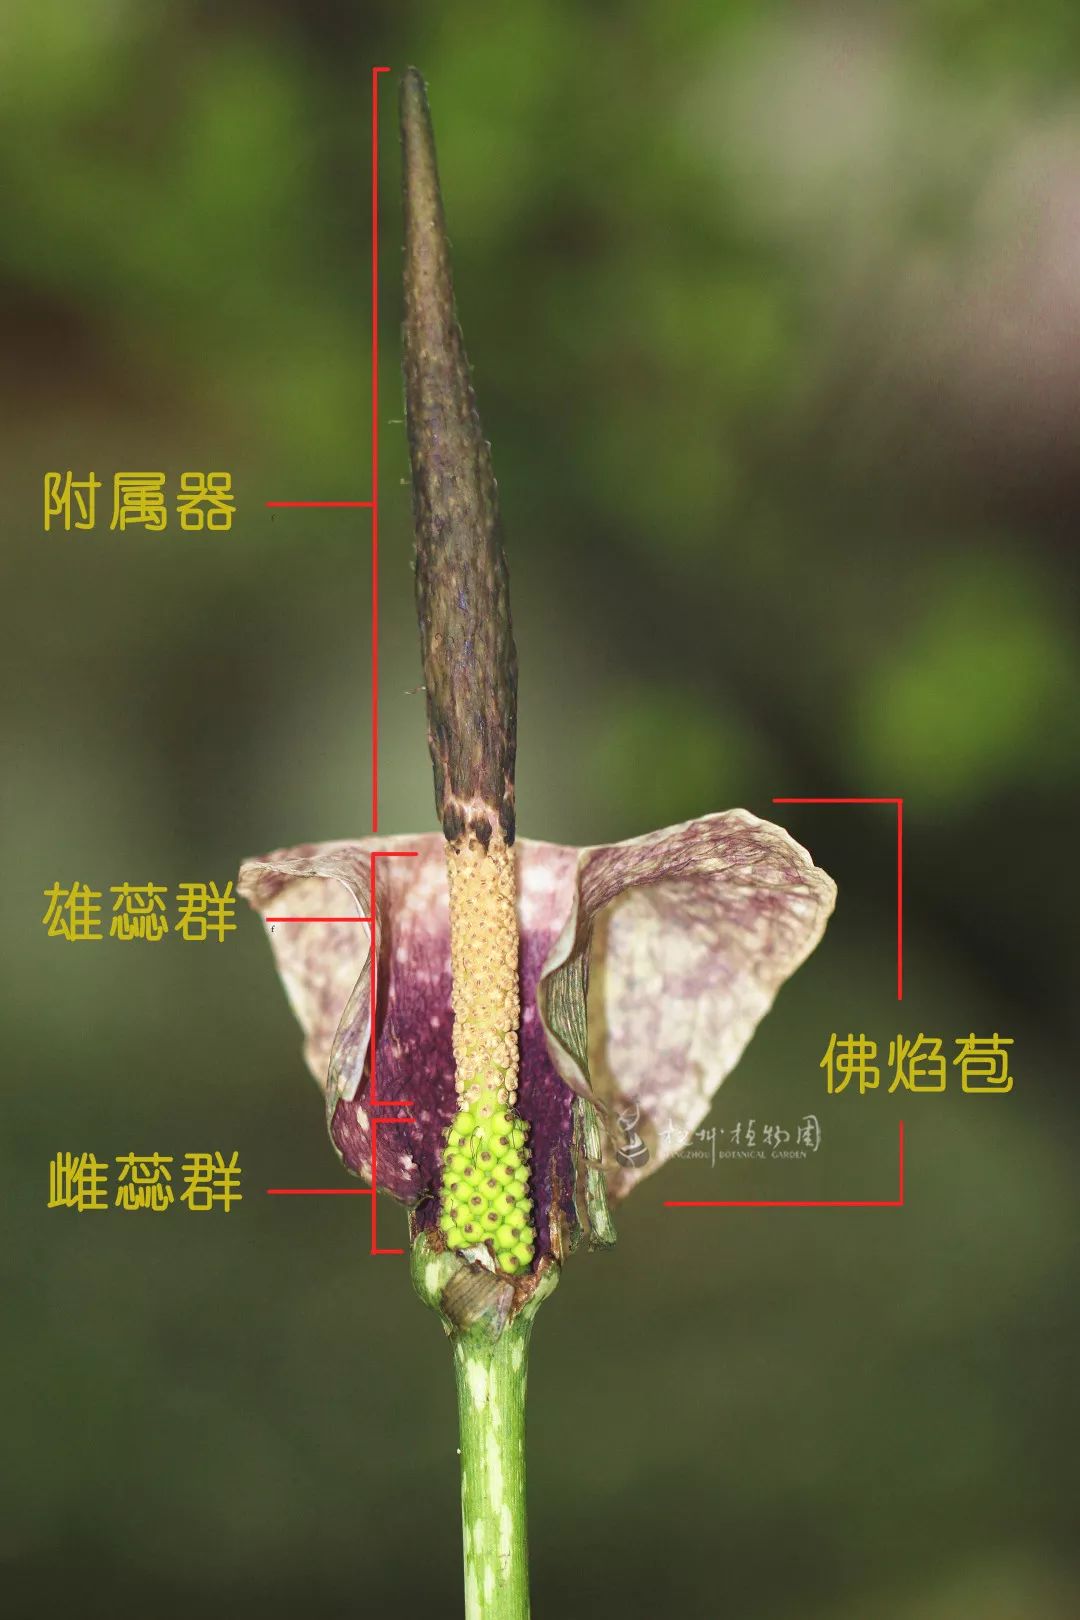 棒状的花序可以分成三部分:最上端一大截黑色圆锥体,是由不育雄蕊和